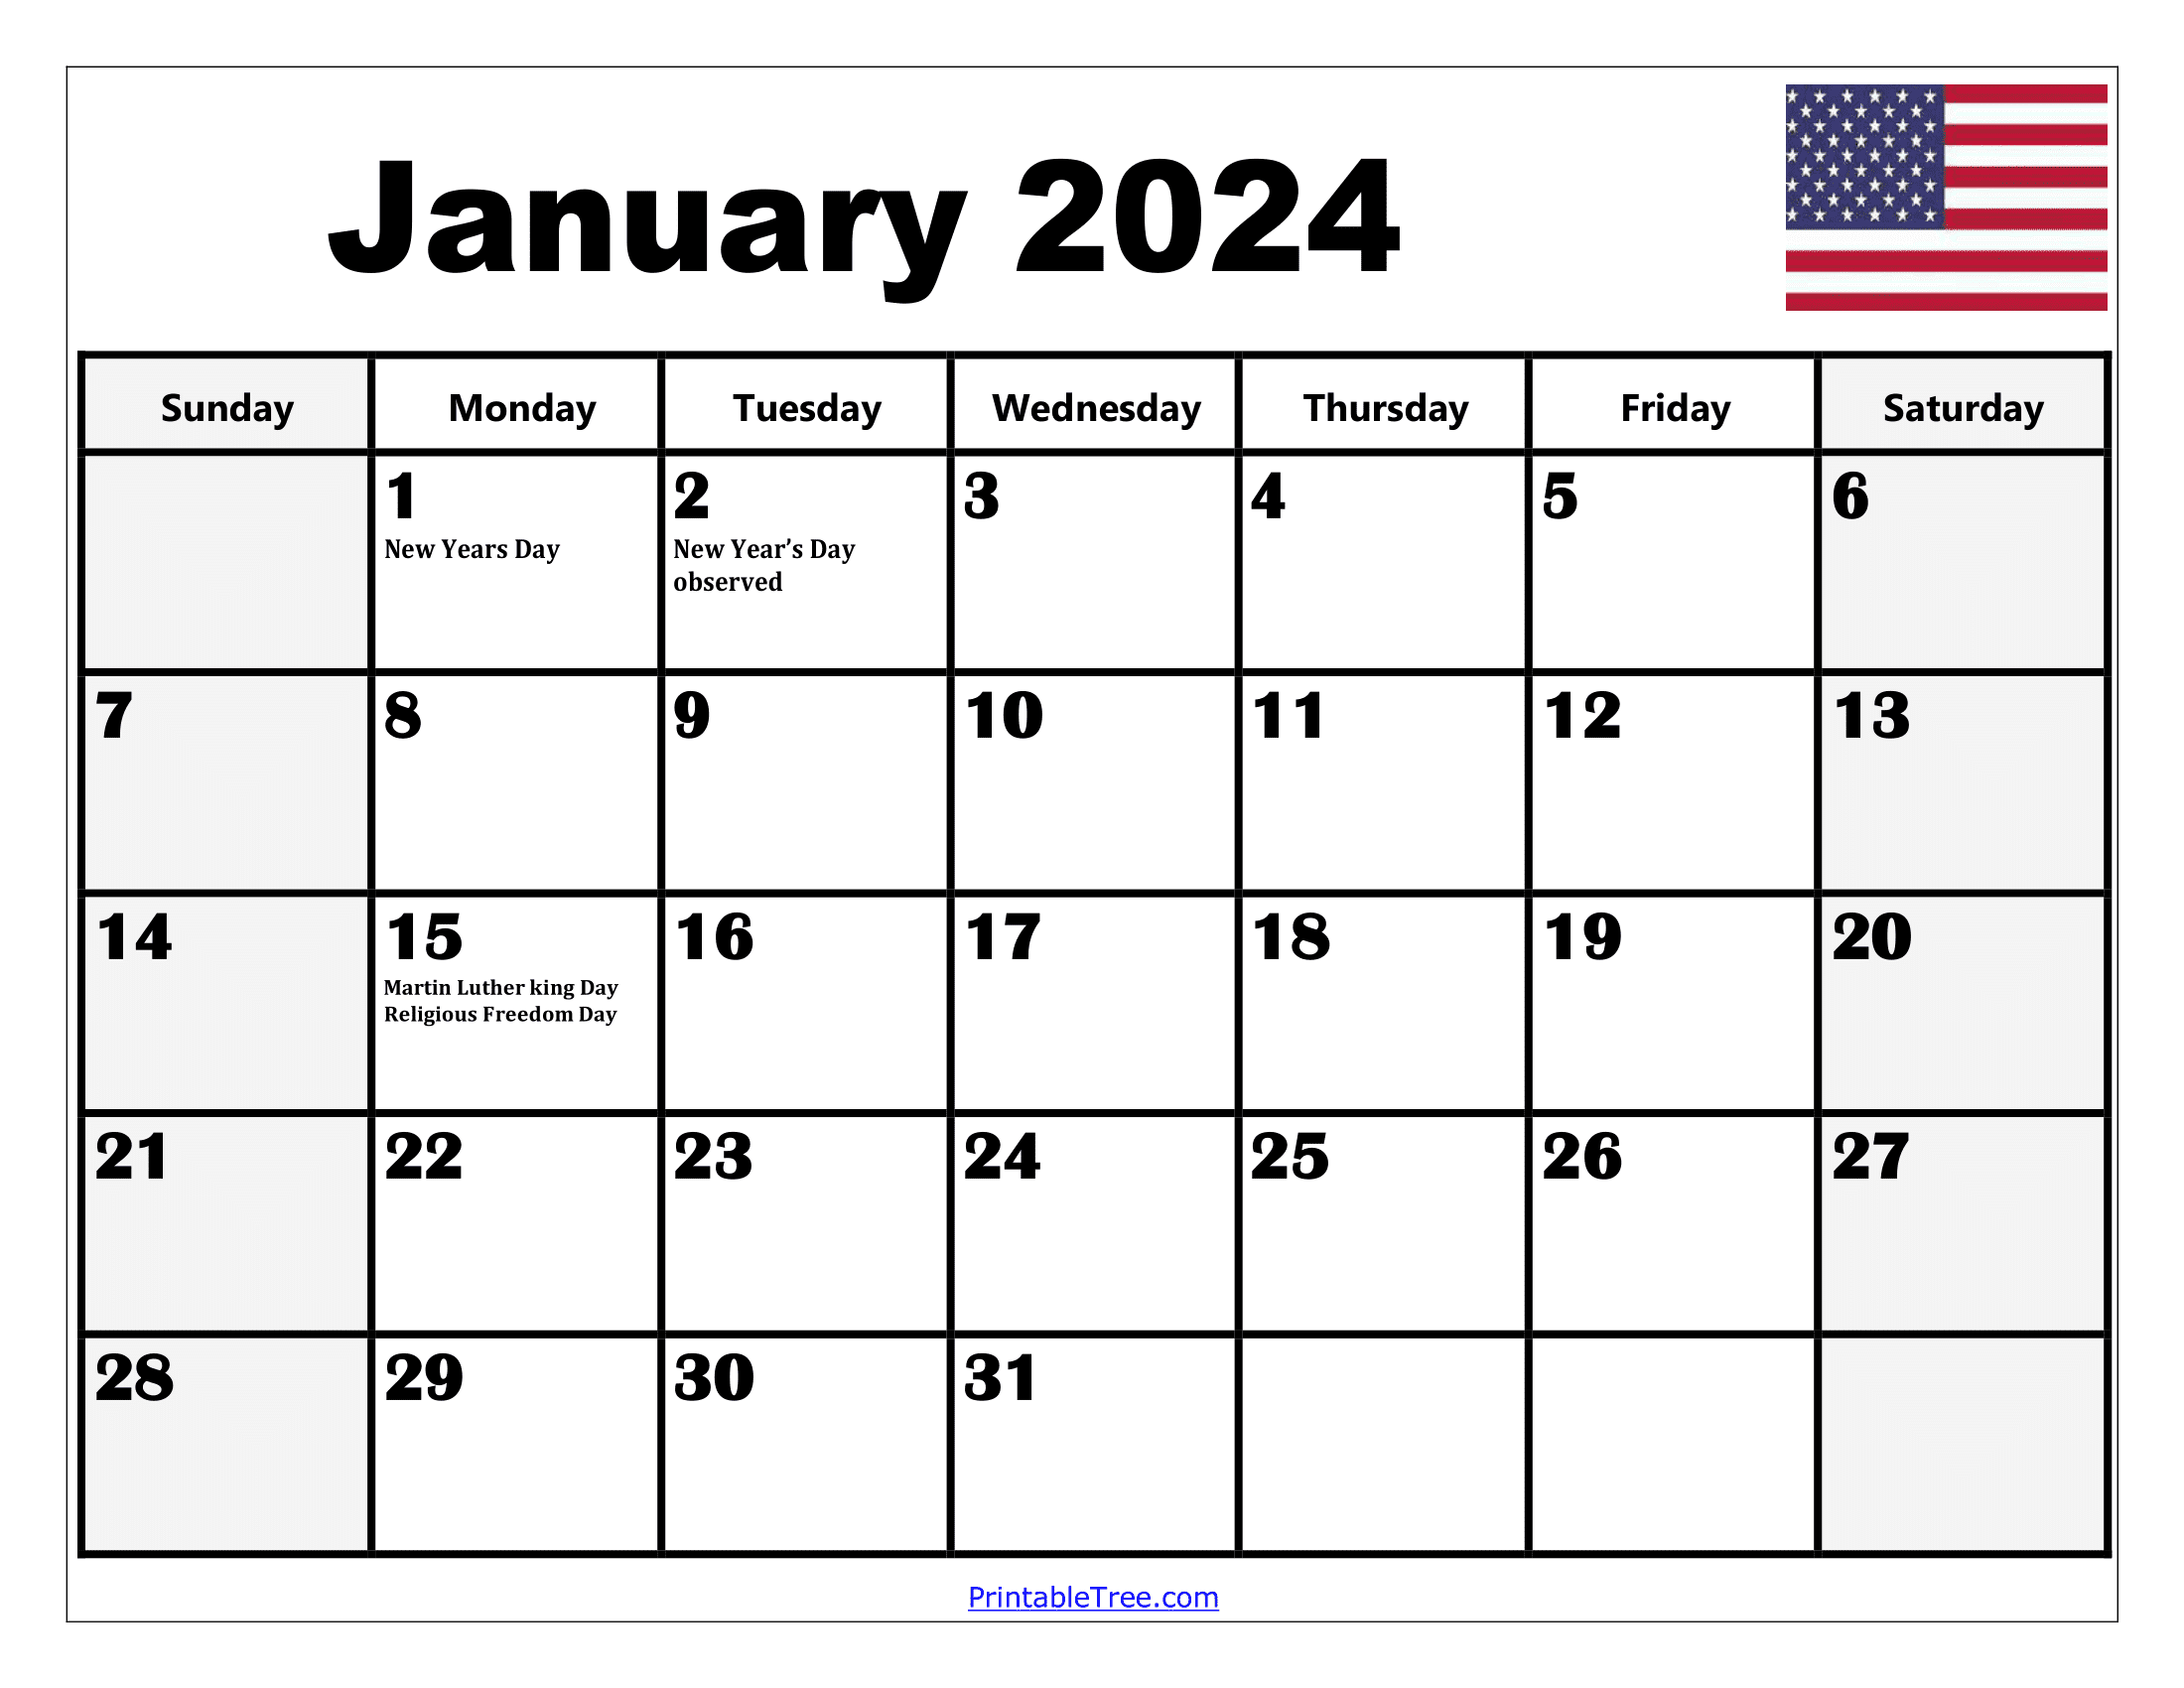 2024 Holiday Calendar Days Free Download Nov 2024 Calendar - Free Printable 2024 Calendar With Holidays And Seasons